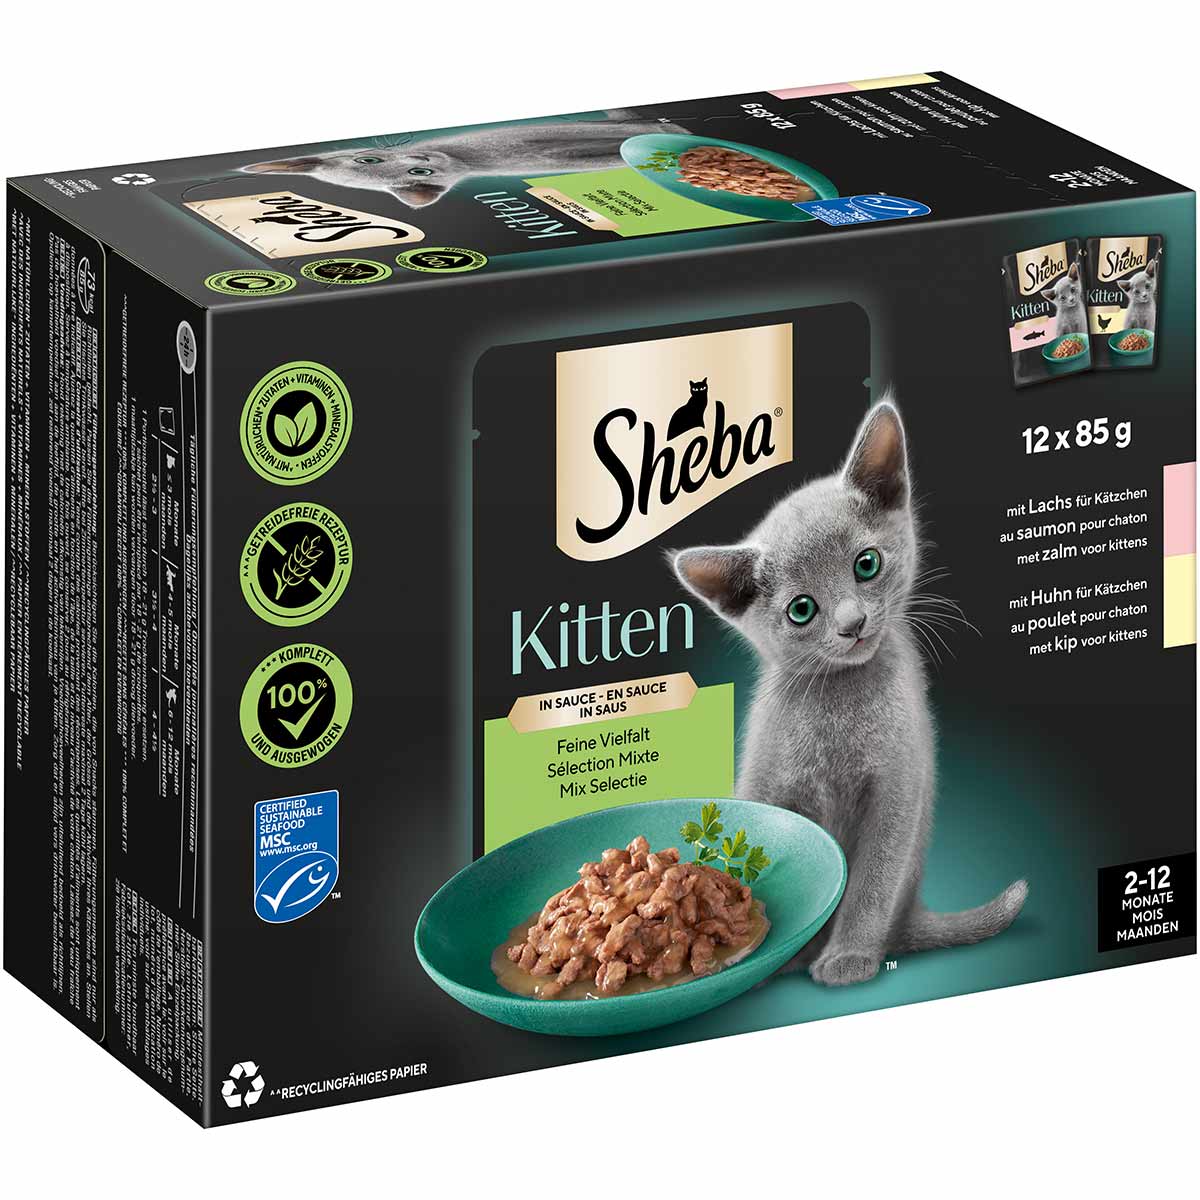 Sheba Multipack Kitten v omáčce Feine Vielfalt, 12 × 85 g